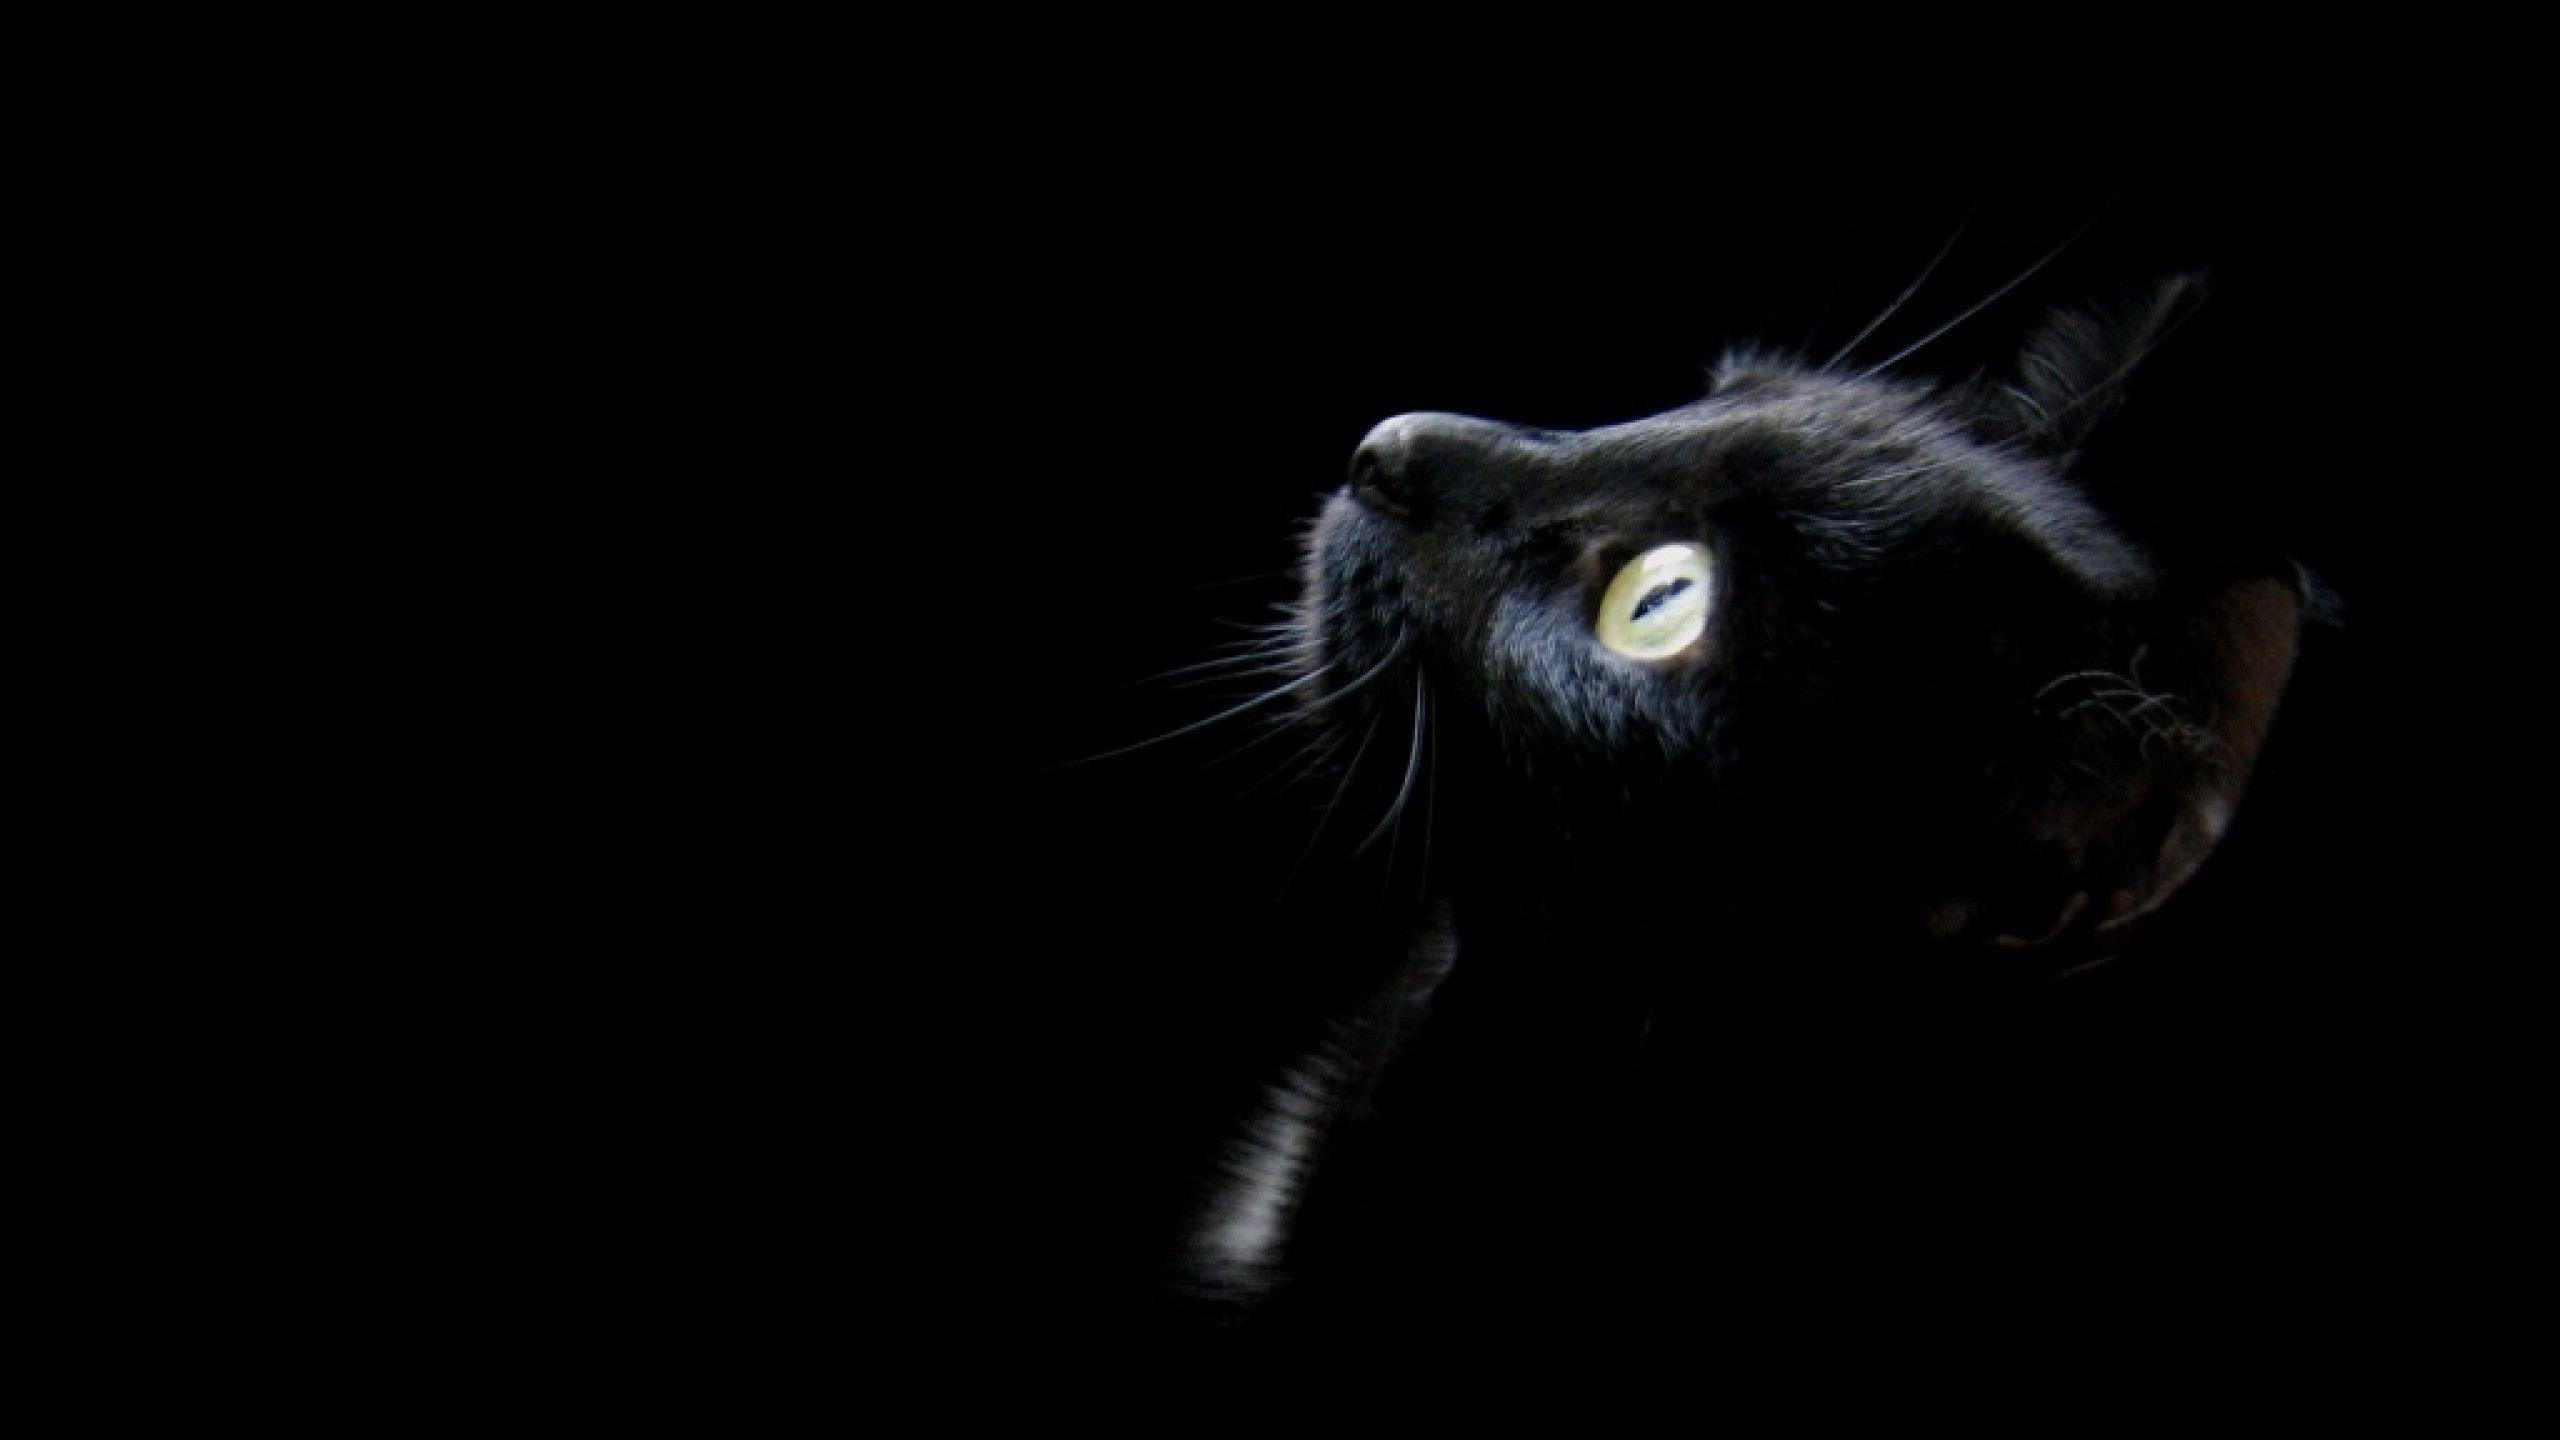 Bí ẩn và điềm tĩnh của chú mèo đen trong hoàn cảnh đen tối sẽ khiến cho bất cứ ai cũng cảm thấy thích thú. Hãy tạo cho mình một phông nền ảo độc đáo cùng chú mèo này và khám phá sự kỳ diệu của tối đang chờ đón bạn.